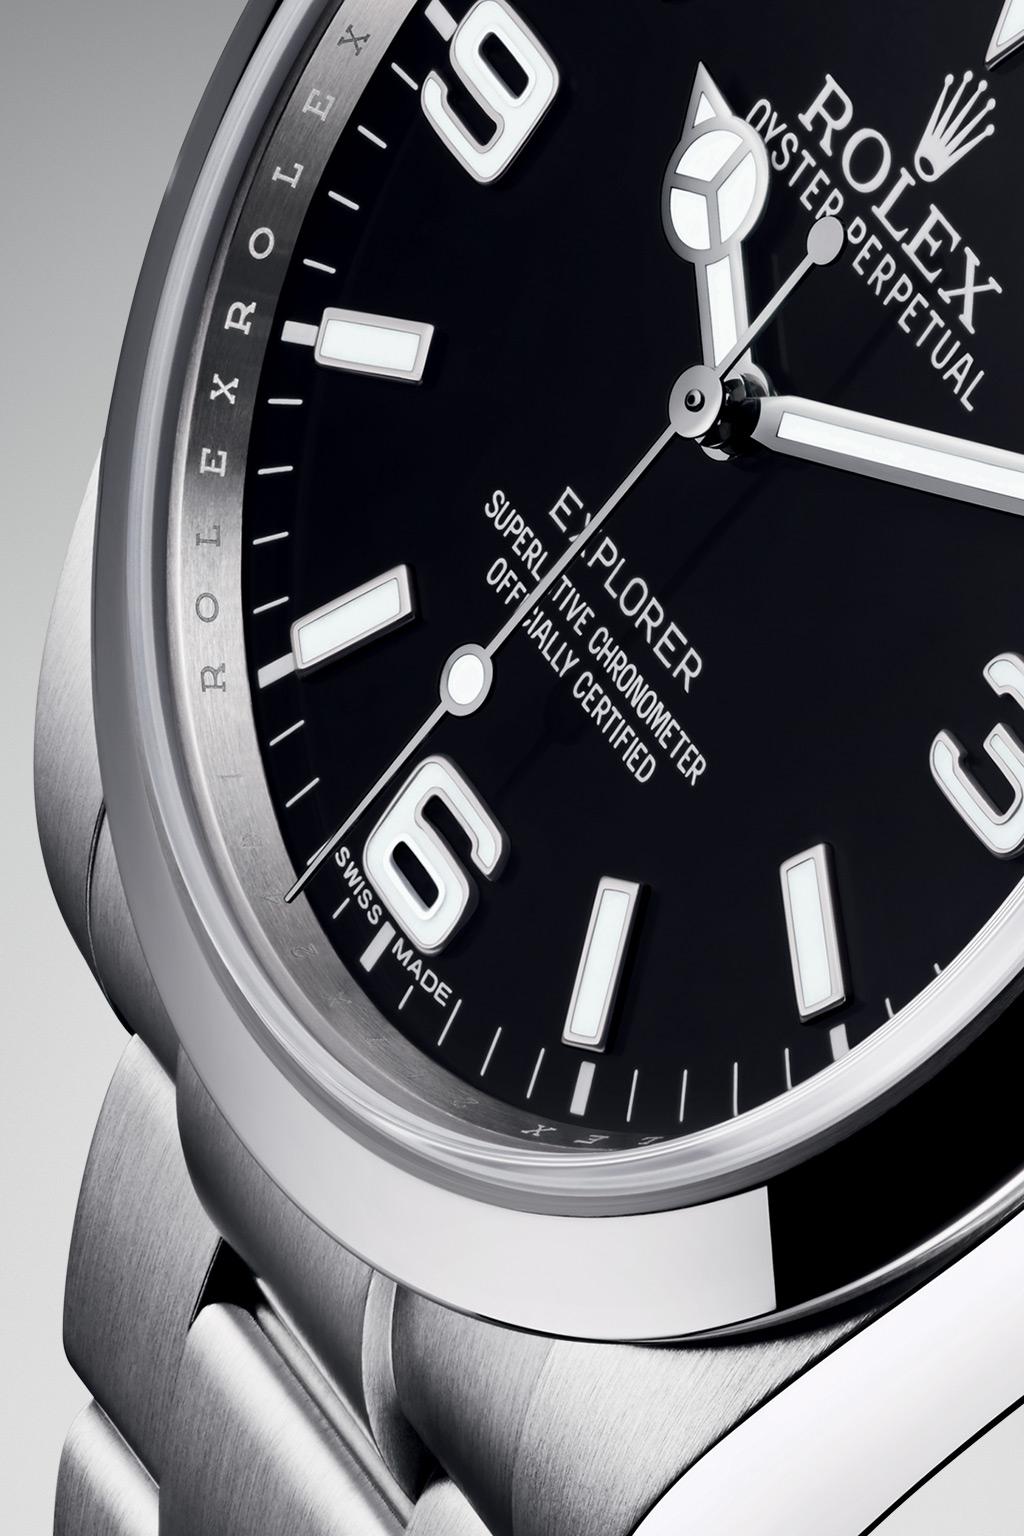 Özellikler ÜSTÜN KRONOMETRE SERTİFİKASI Explorer, Rolex in 2015 te tanımını yeniden belirlediği Superlative Chronometer (Üstün Kronometre) sertifikasına sahiptir.